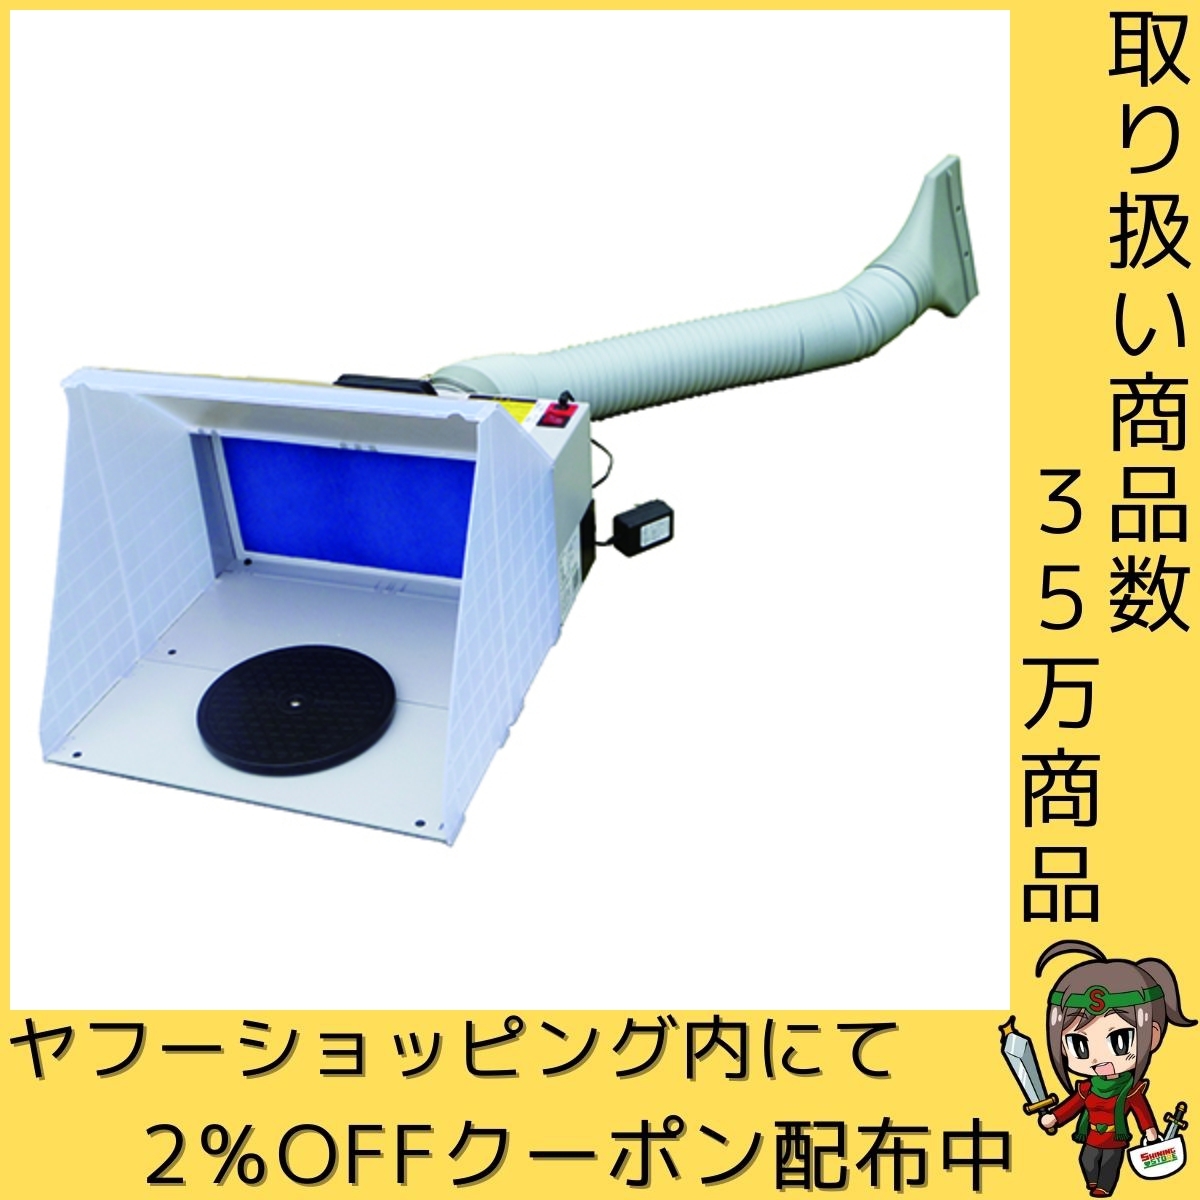 マジカルサクション アネスト岩田C エアーツール メーカー工具・機器 MX3430